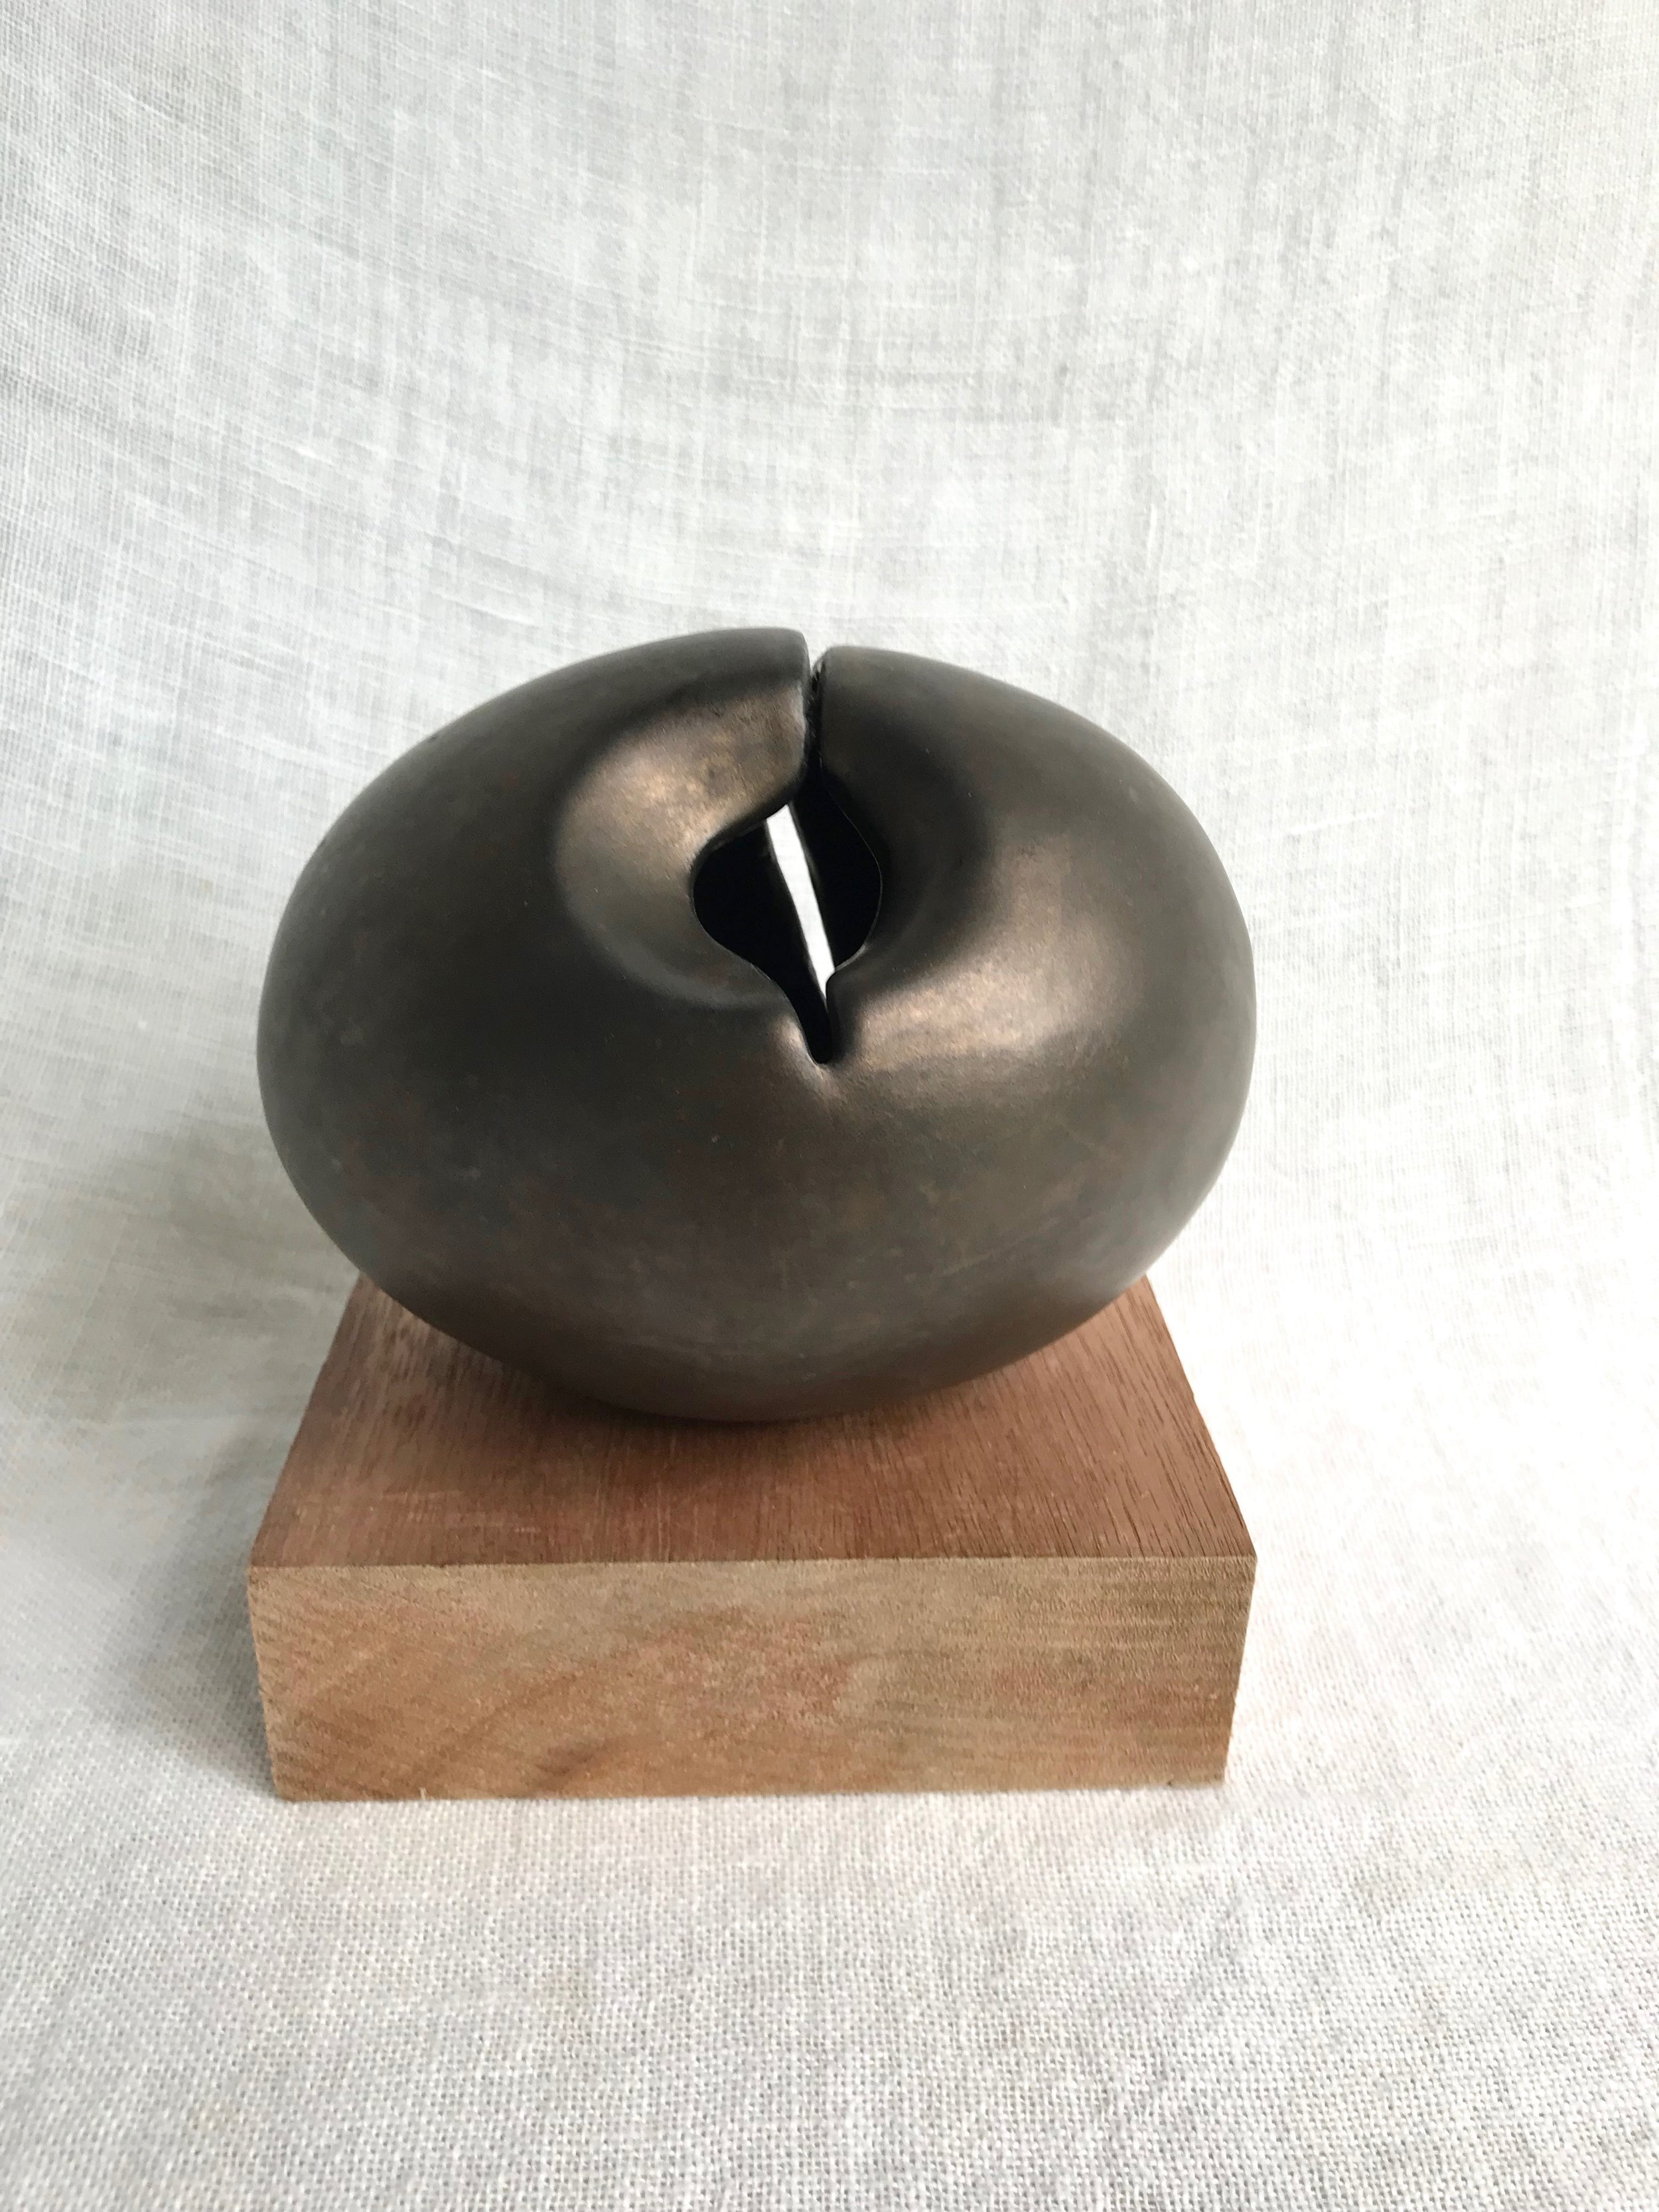 Womb, 2017, stoneware, glazed, 6 x 5 x 5 in $900